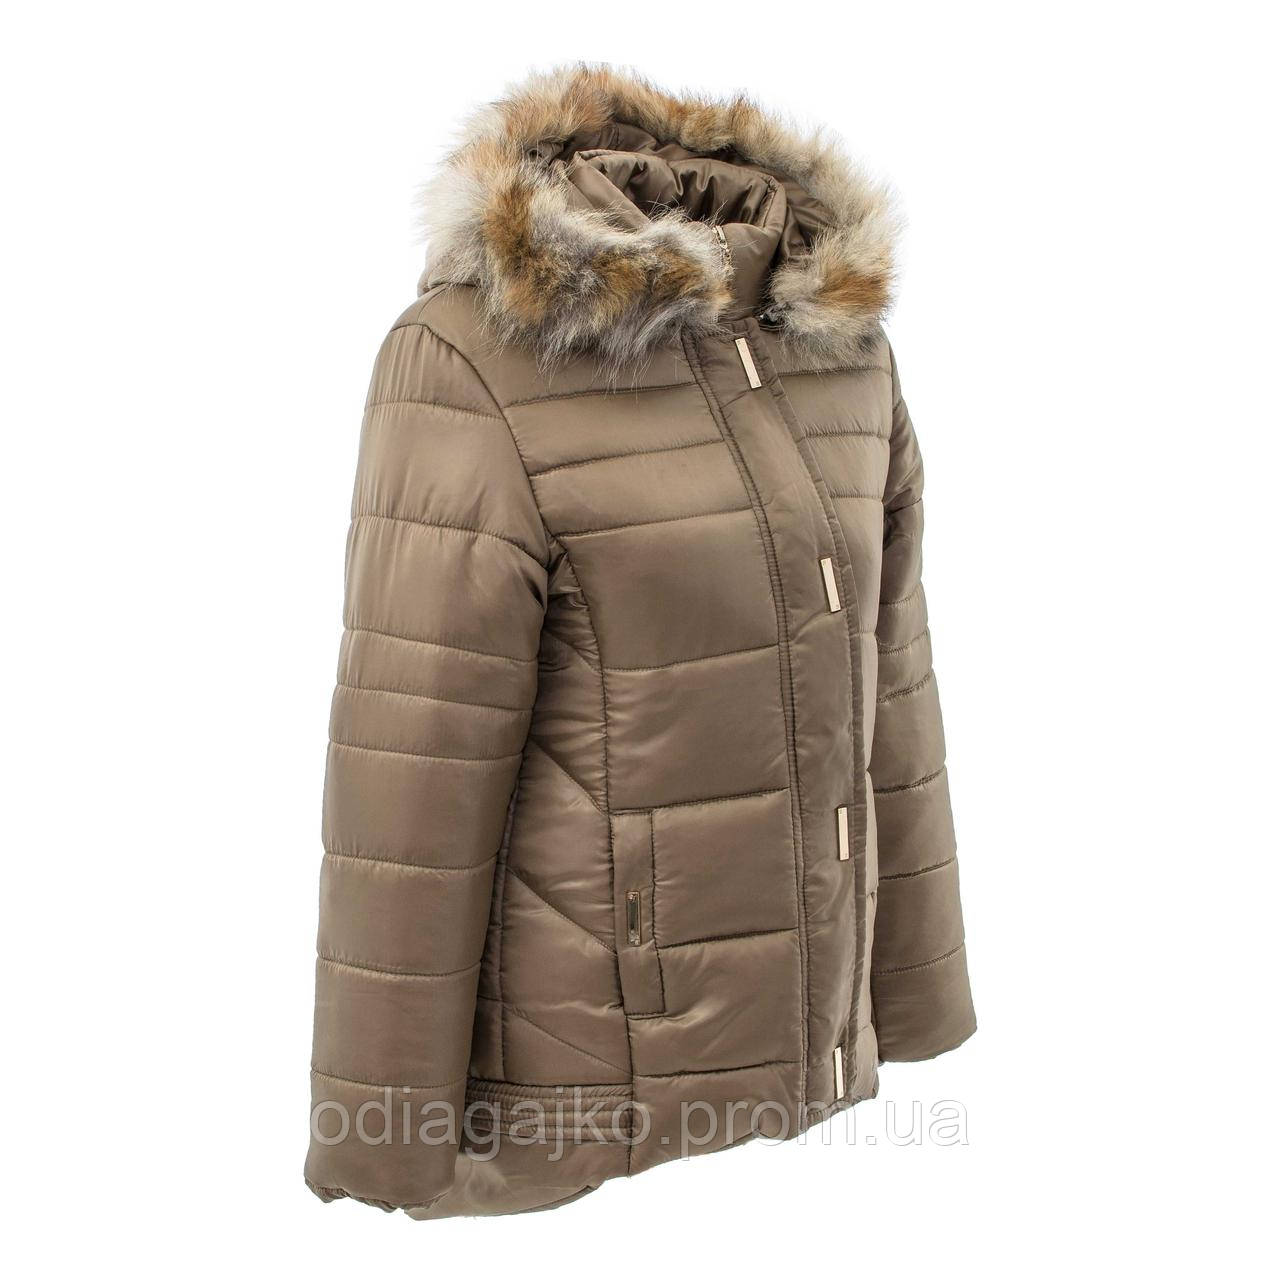 Куртка дитяча для дівчинки зима Жіноча КАПУЧИНО 146,152,158,164 см подовжена ззаду натуральне хутро